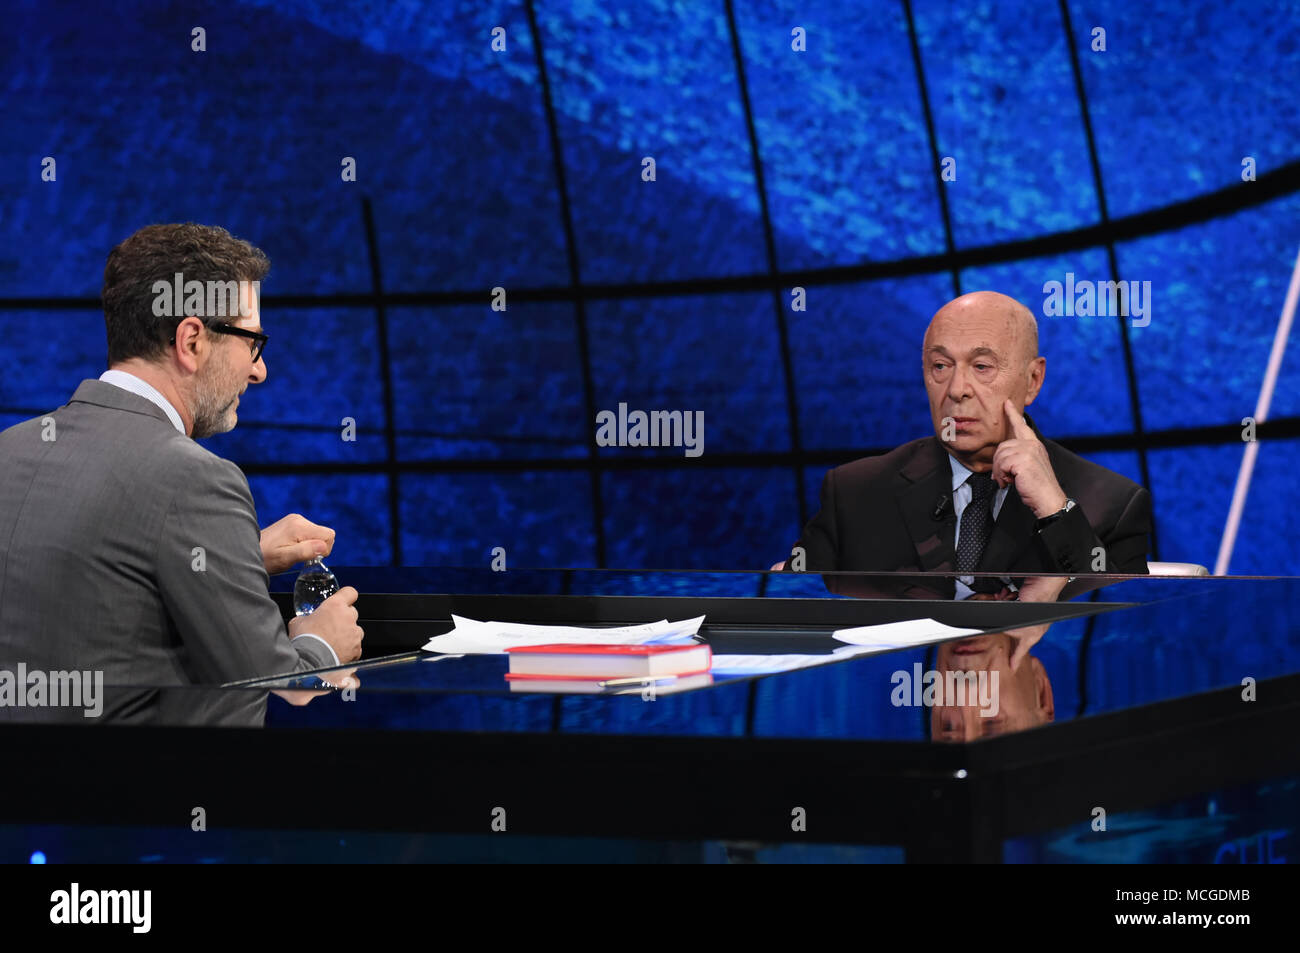 Paolo Mieli invité de l'émission de télévision Che tempo che fa. 15/04/2018, Milan, Italie Banque D'Images